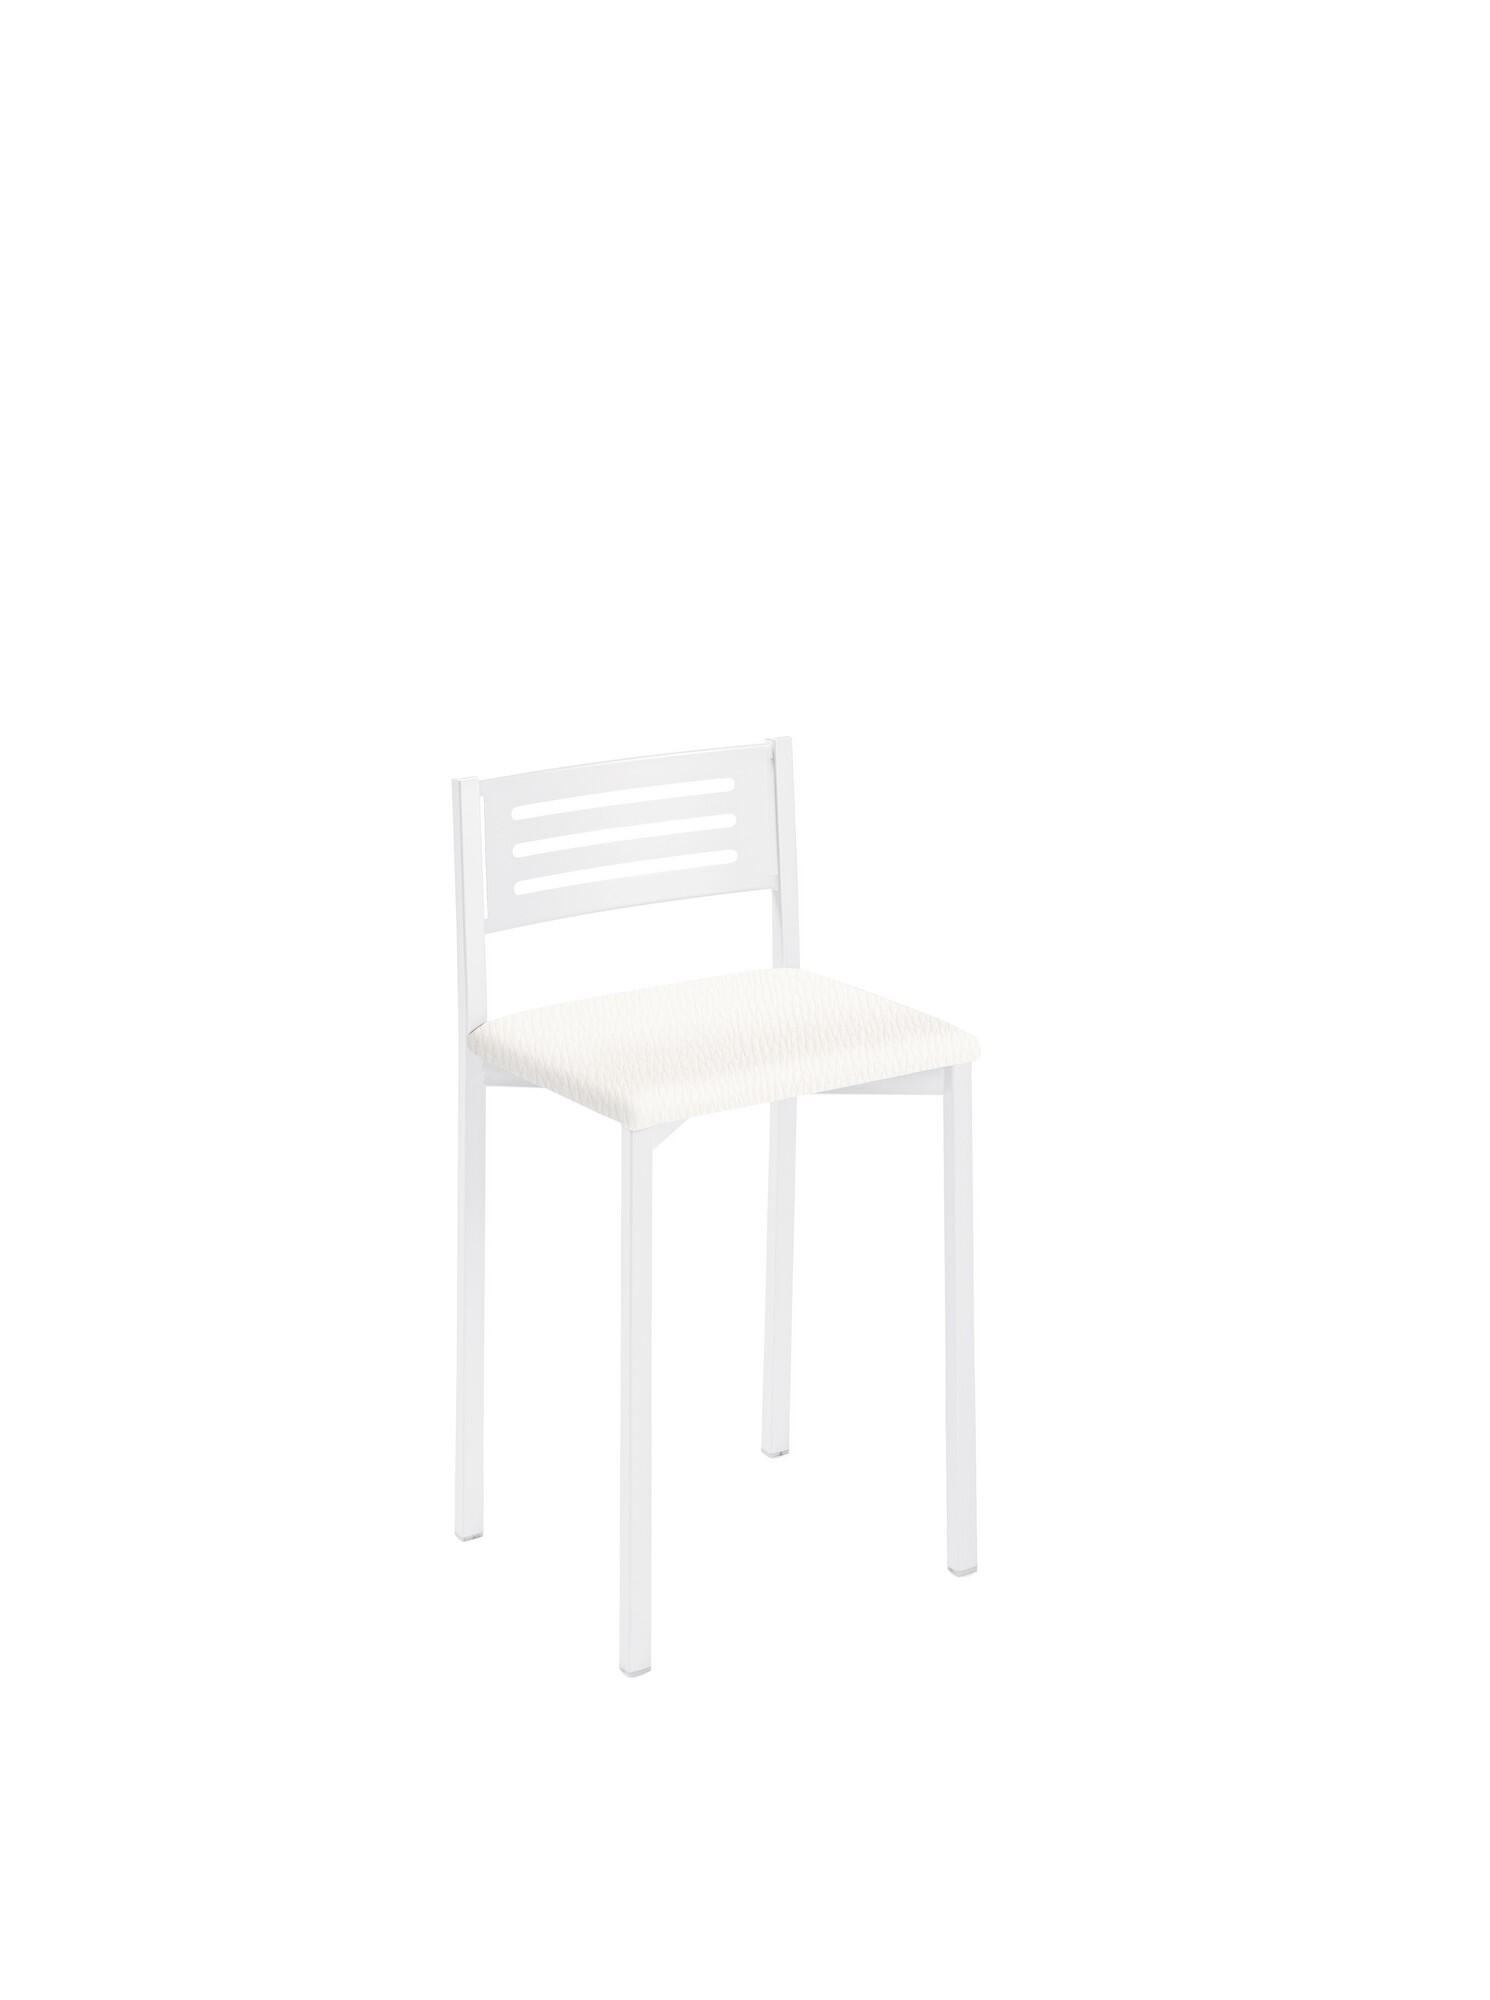 Taburete de estructura color blanco texturizado y asiento blanco de 33 x 47 cm